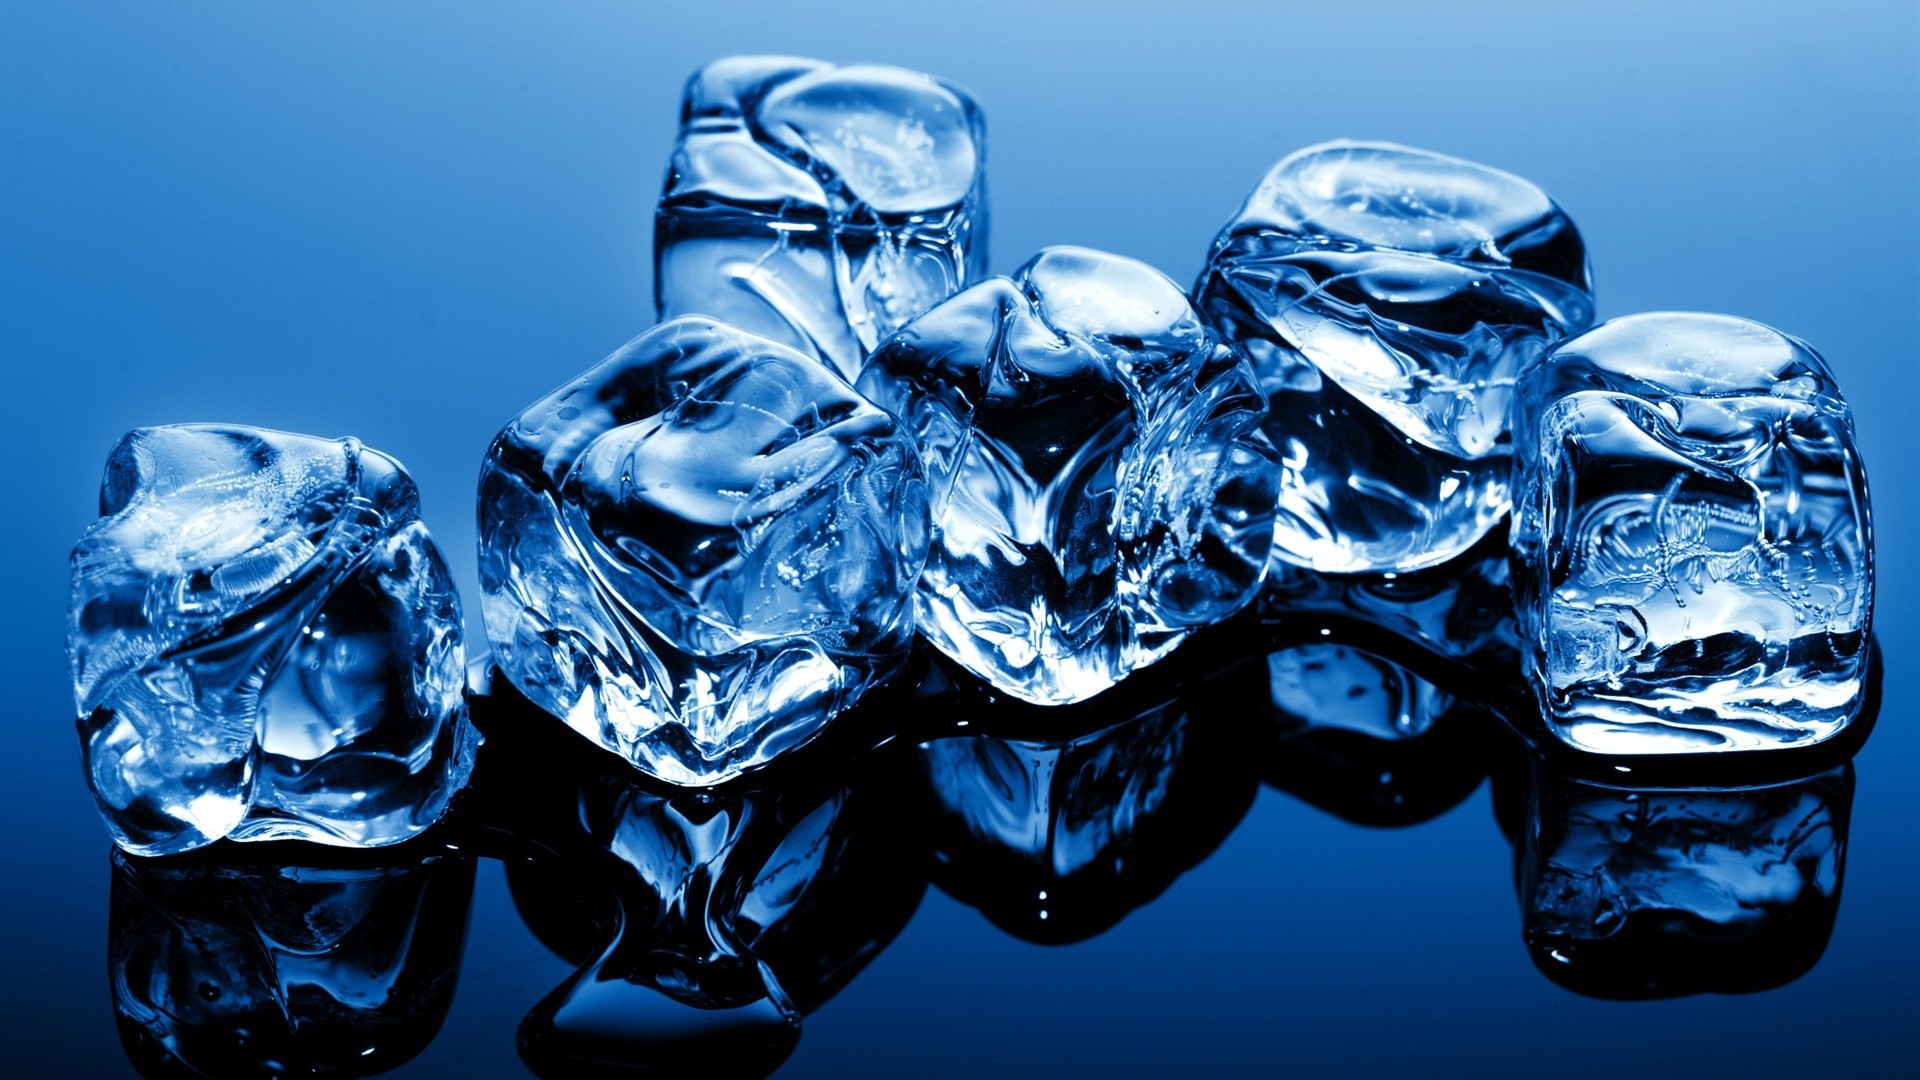 лед понятно воды чистота гладкая падение отражение прозрачный движения чистые бирюза холодная мокрый кристалл пузырь свет рефракция пить поток светит плавления